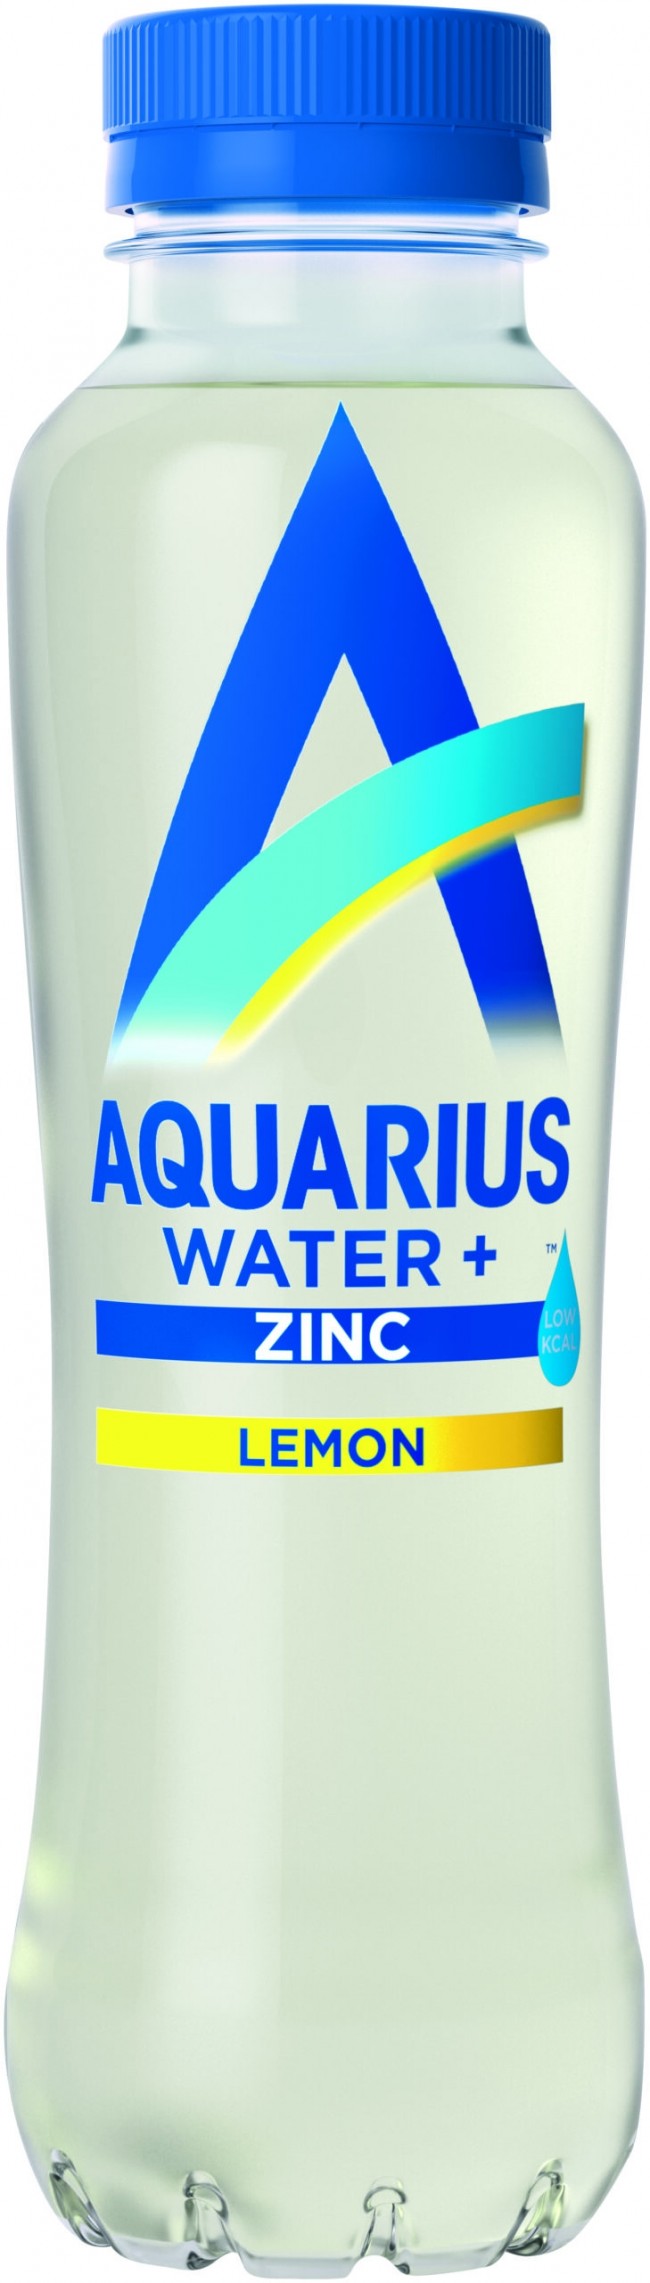 Aquarius Lemon, 40cl PET